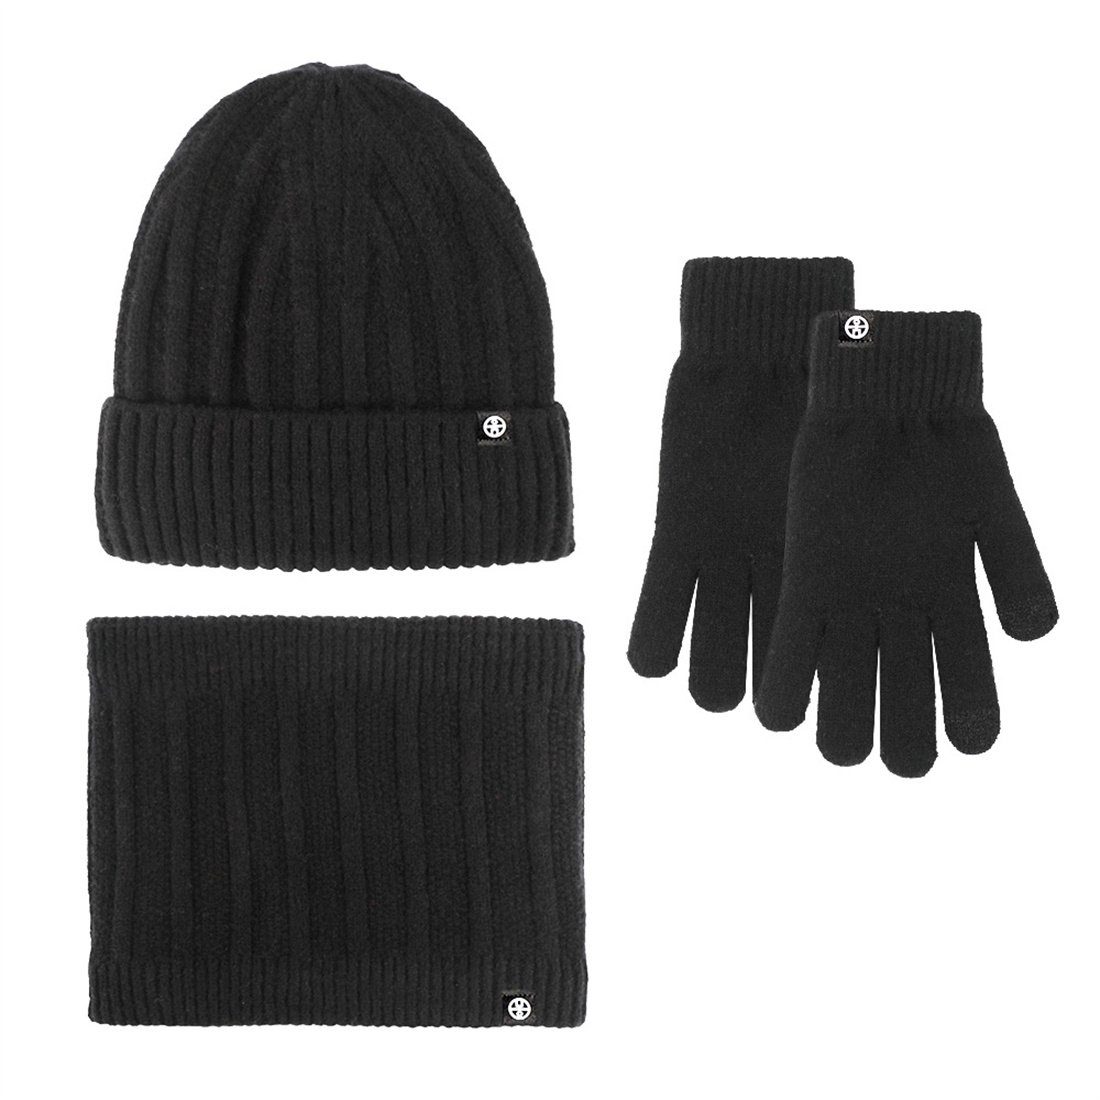 DÖRÖY Strickmütze Unisex Winter Wollmütze Set, Warme Mütze Schal Handschuhe 3 Stück Set Schwarz